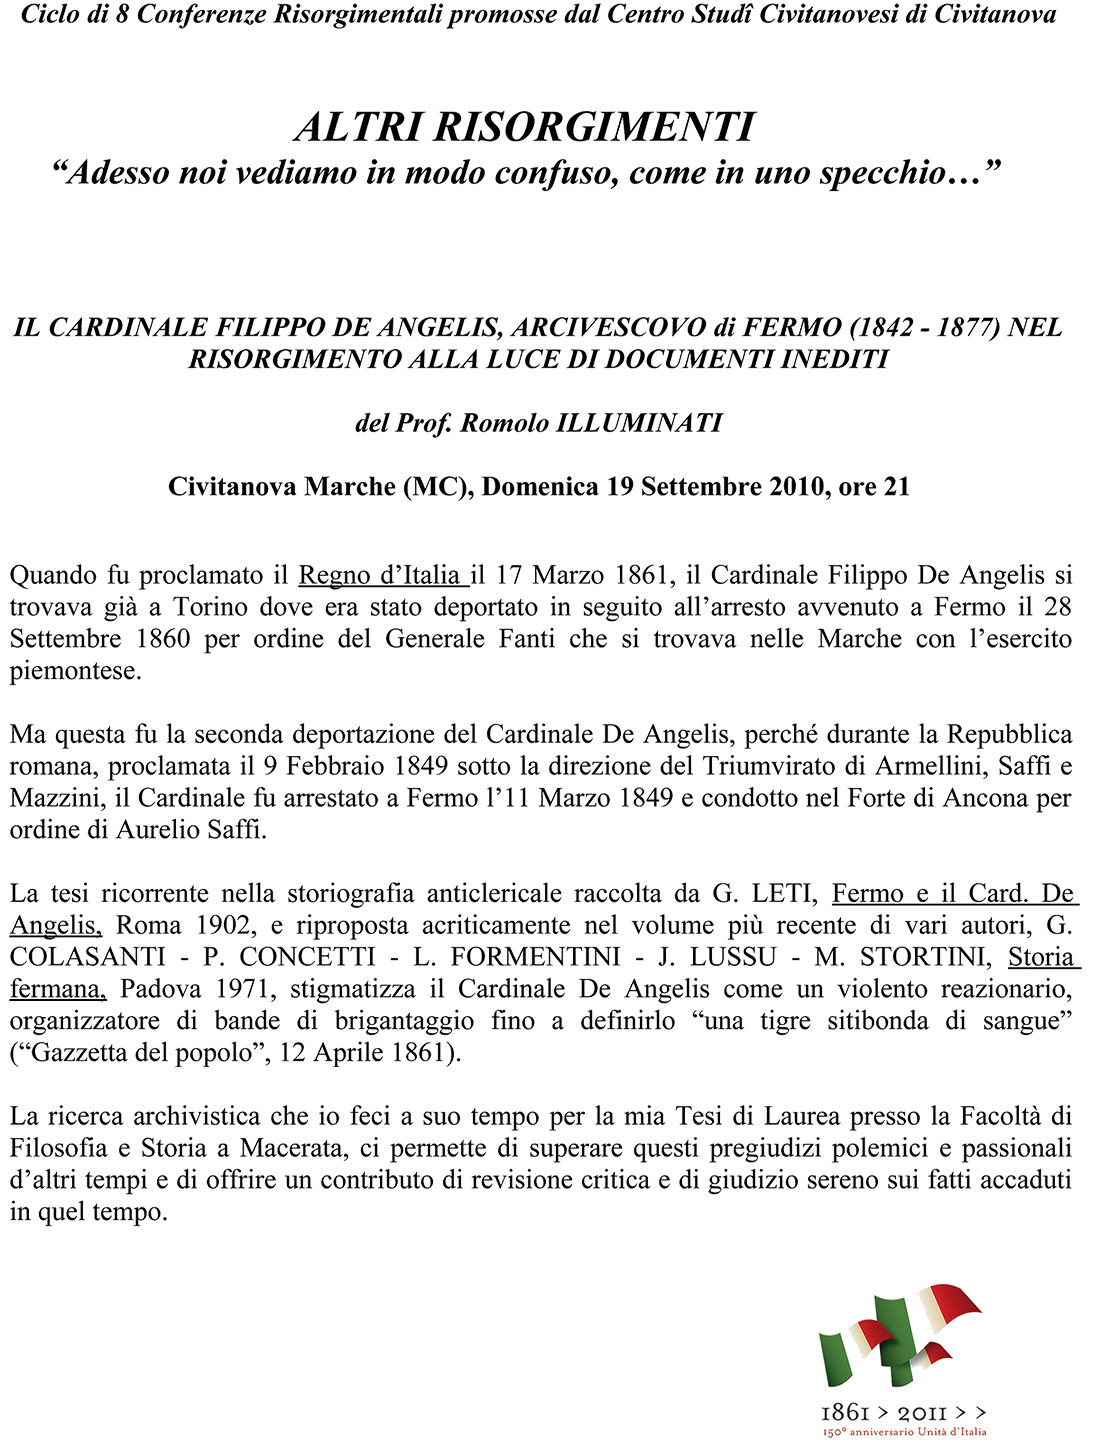 Romolo Illuminati: conferenza Il Cardinale Filippo De Angelis Arcivescovo di Fermo nel Risorgimento alla luce di documenti inediti -- Abstract --